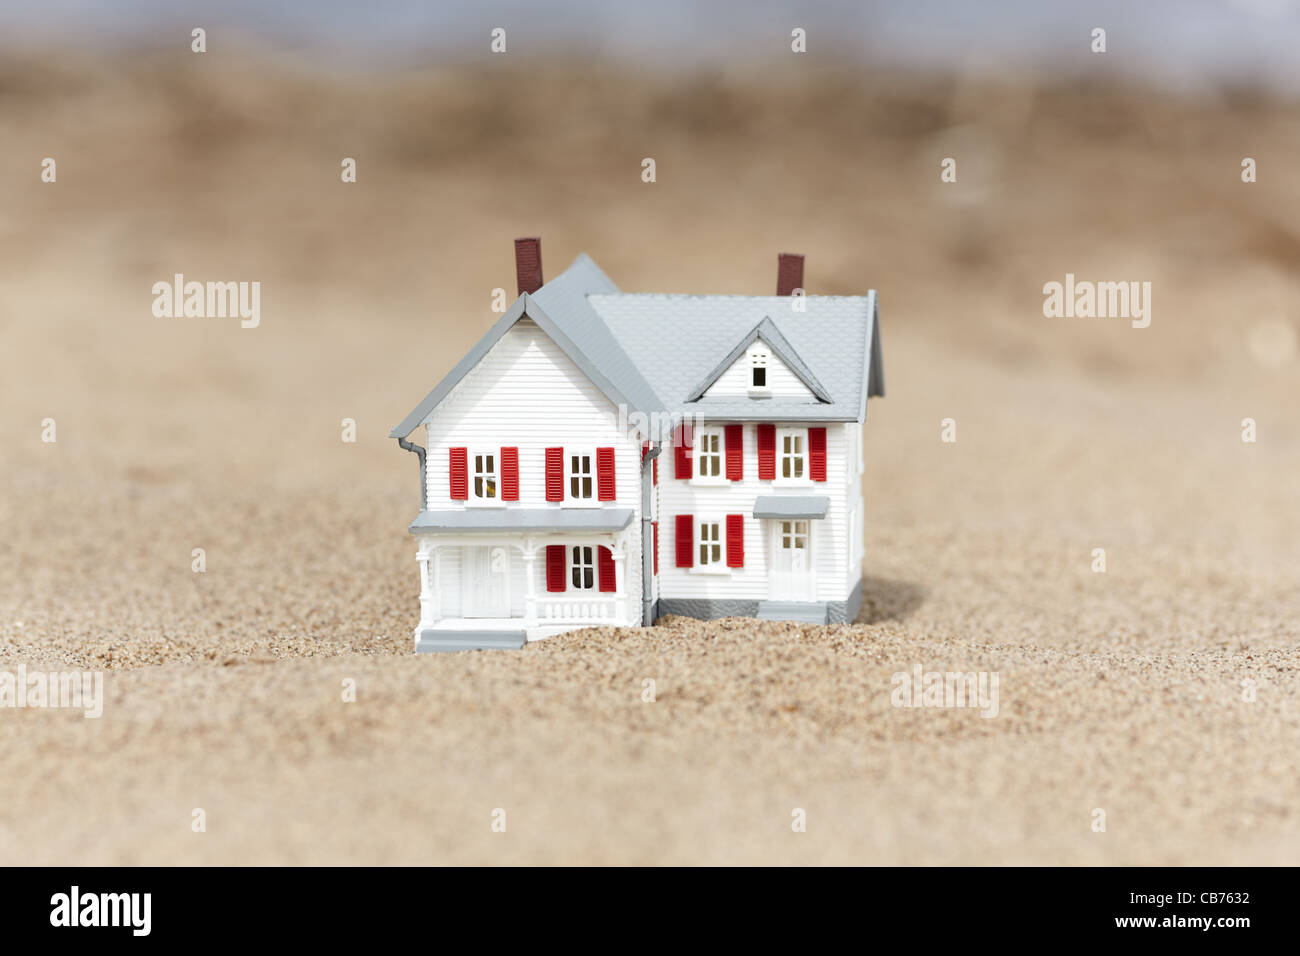 Künstlichen Modell von der Hütte auf den Sand, selektiven Fokus Stockfoto